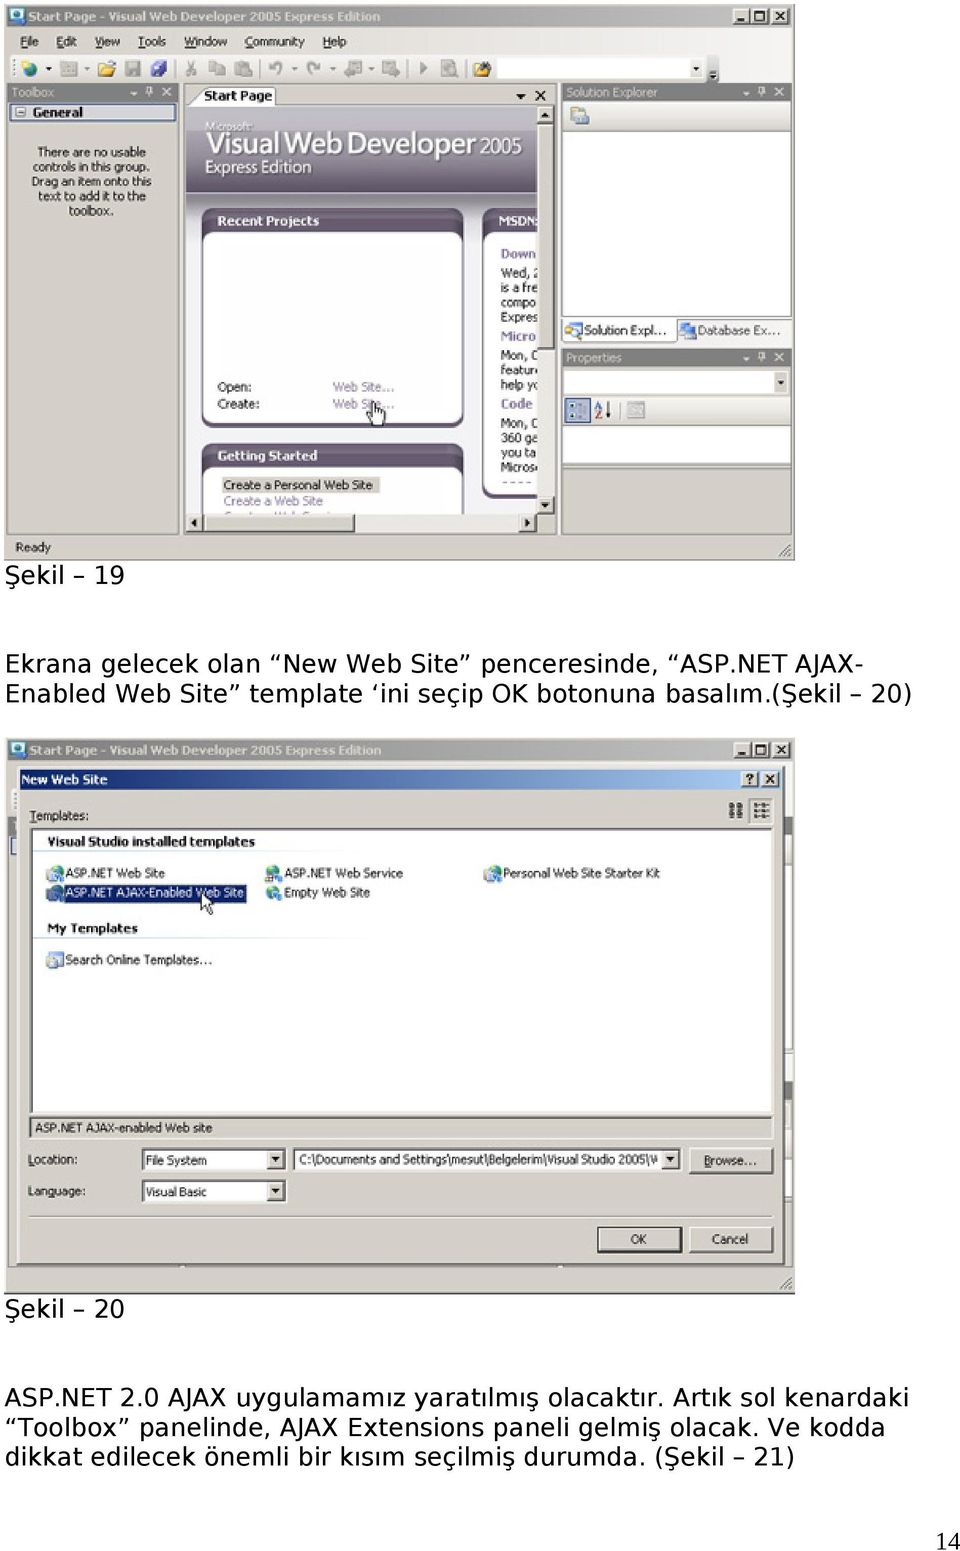 (şekil 20) Şekil 20 ASP.NET 2.0 AJAX uygulamamız yaratılmış olacaktır.